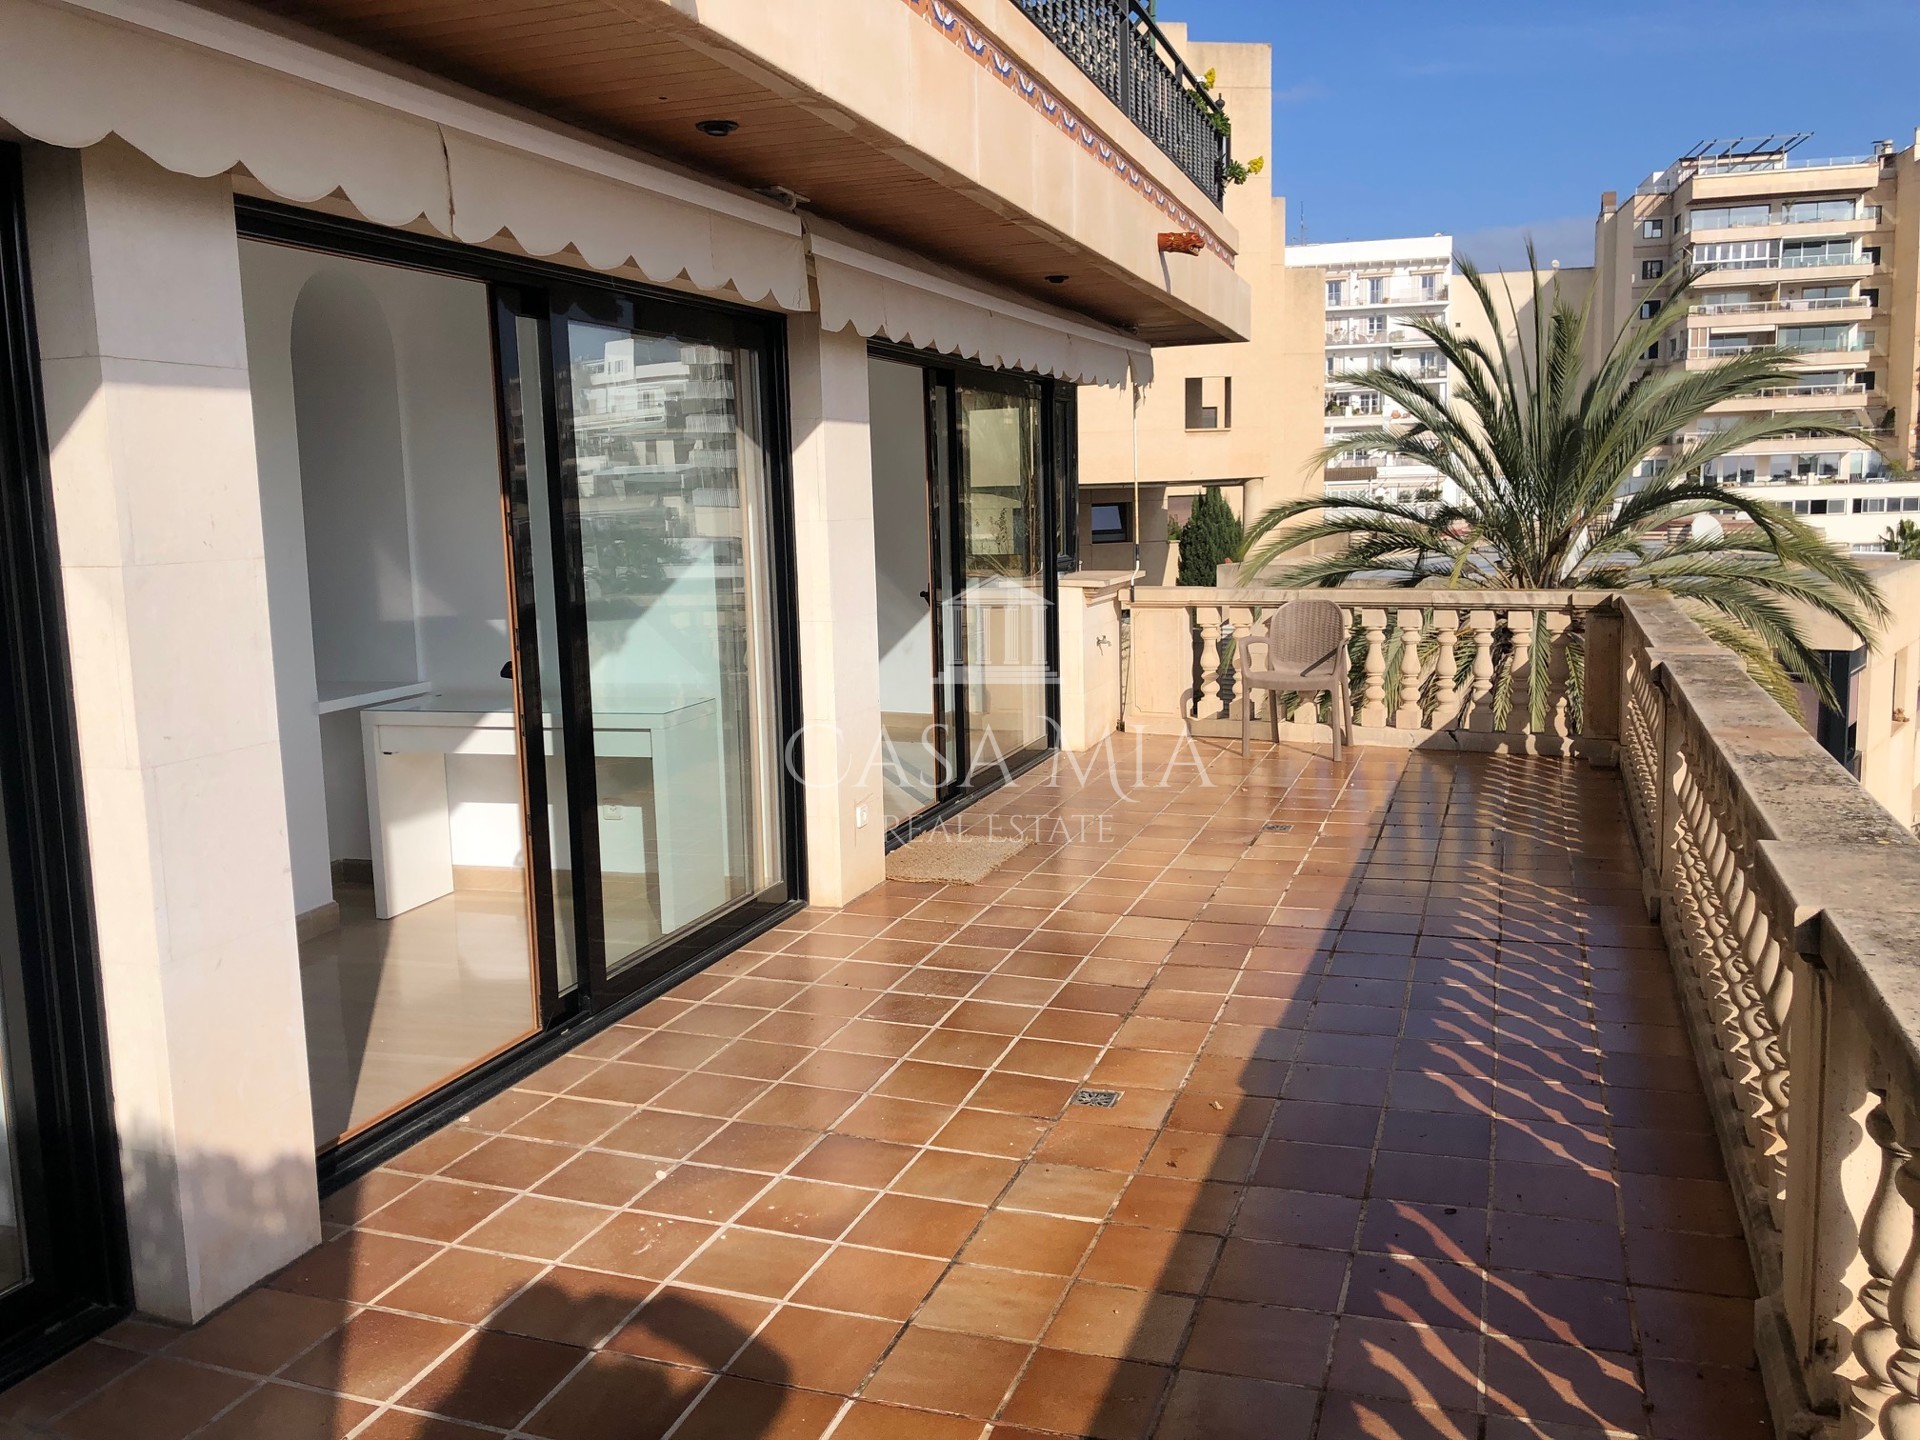 Piękne mieszkanie z widokiem na morze w porcie Can Barbara, Palma